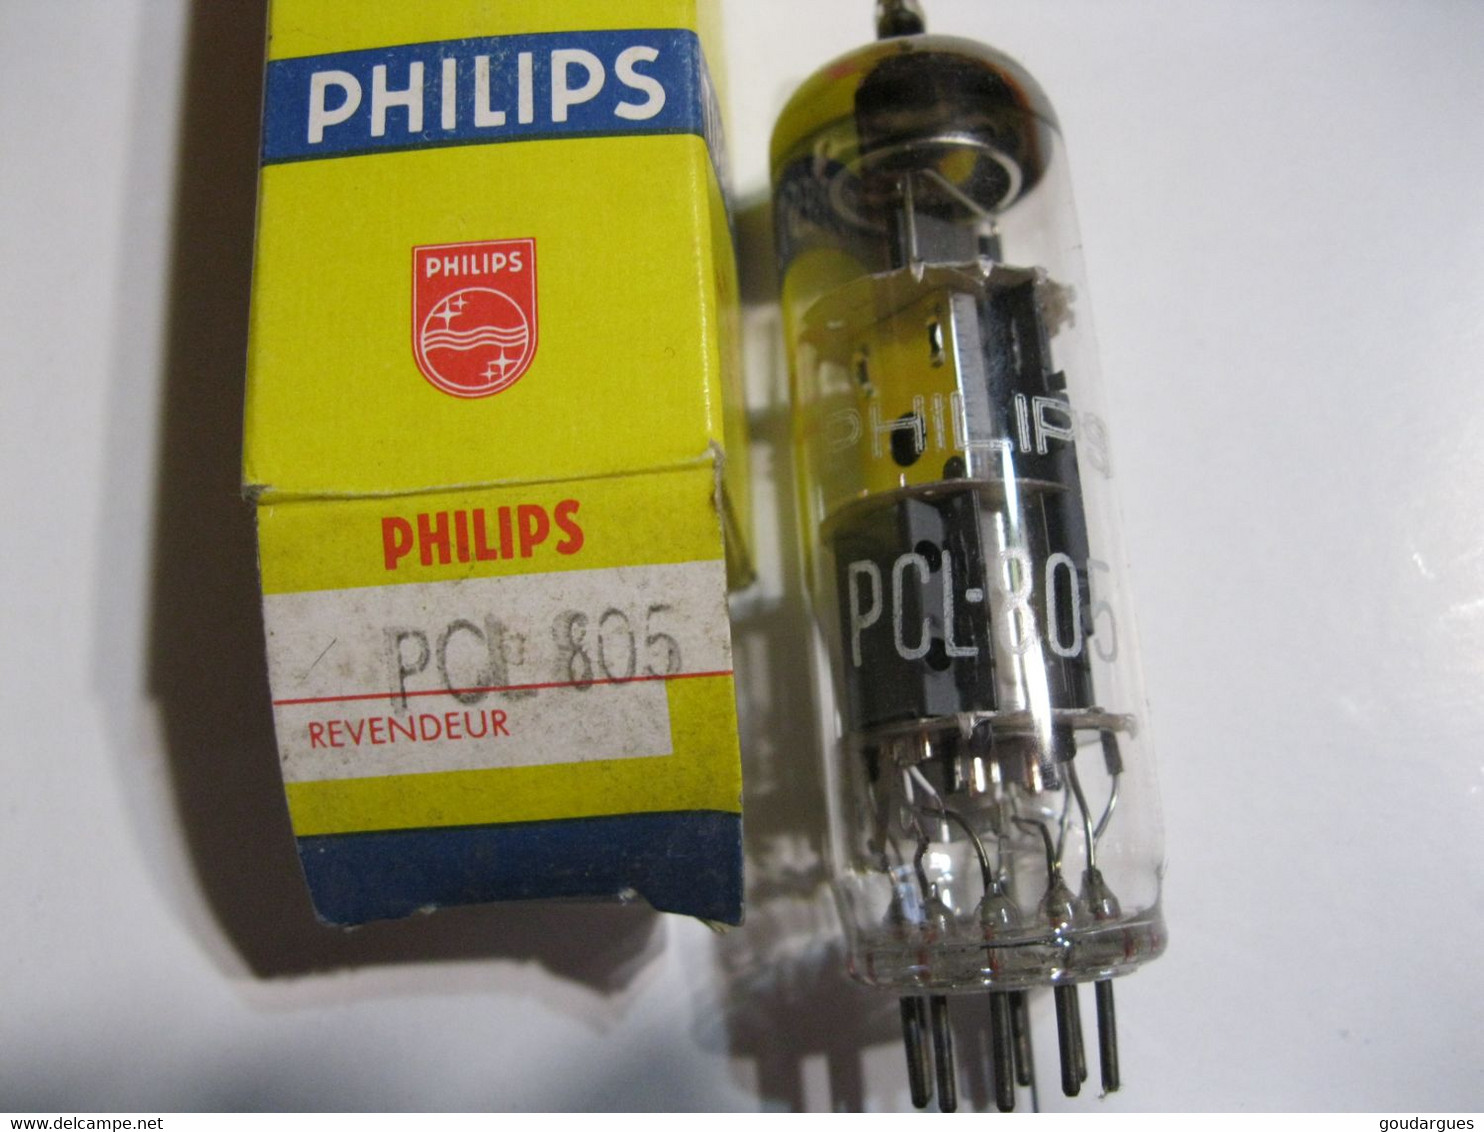 Tube TSF Philips PCL 805 - Tubos